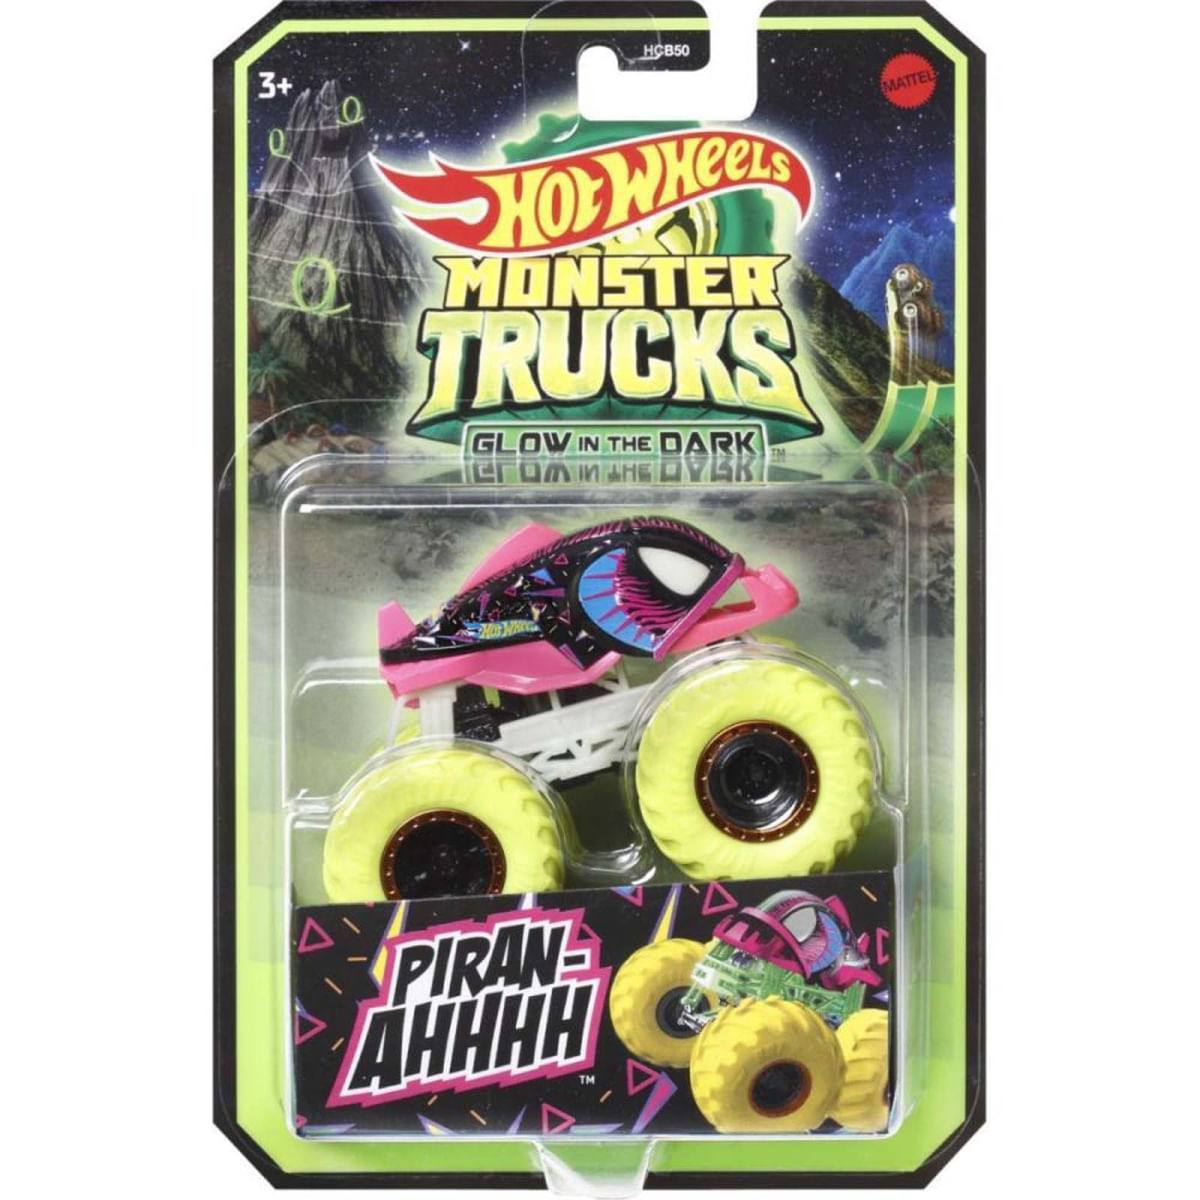 2022 Hot Wheels Monster Trucks Glow In The Dark Piranhahhhh